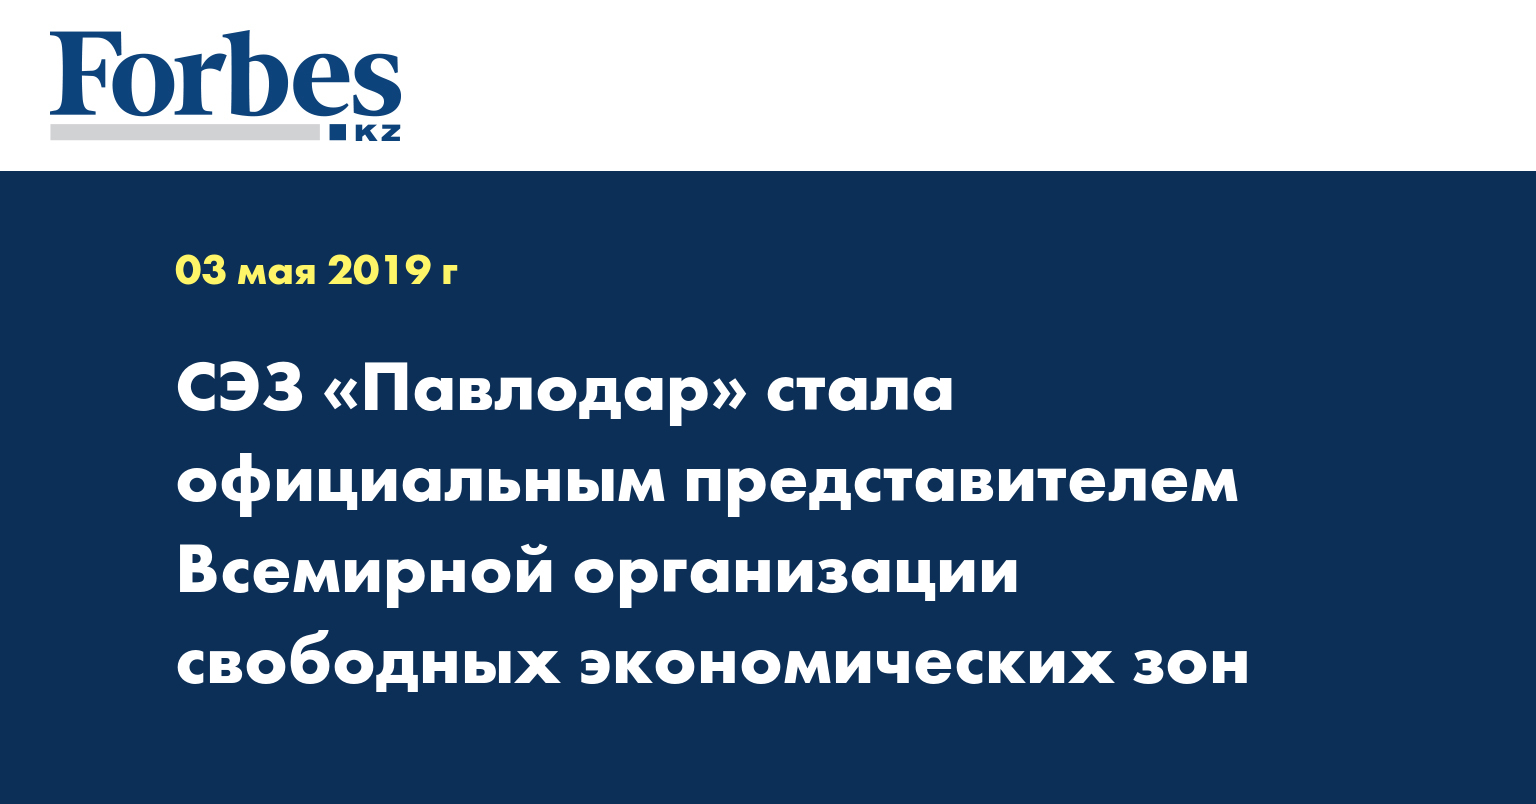 СЭЗ «Павлодар» стала официальным представителем Всемирной организации свободных экономических зон